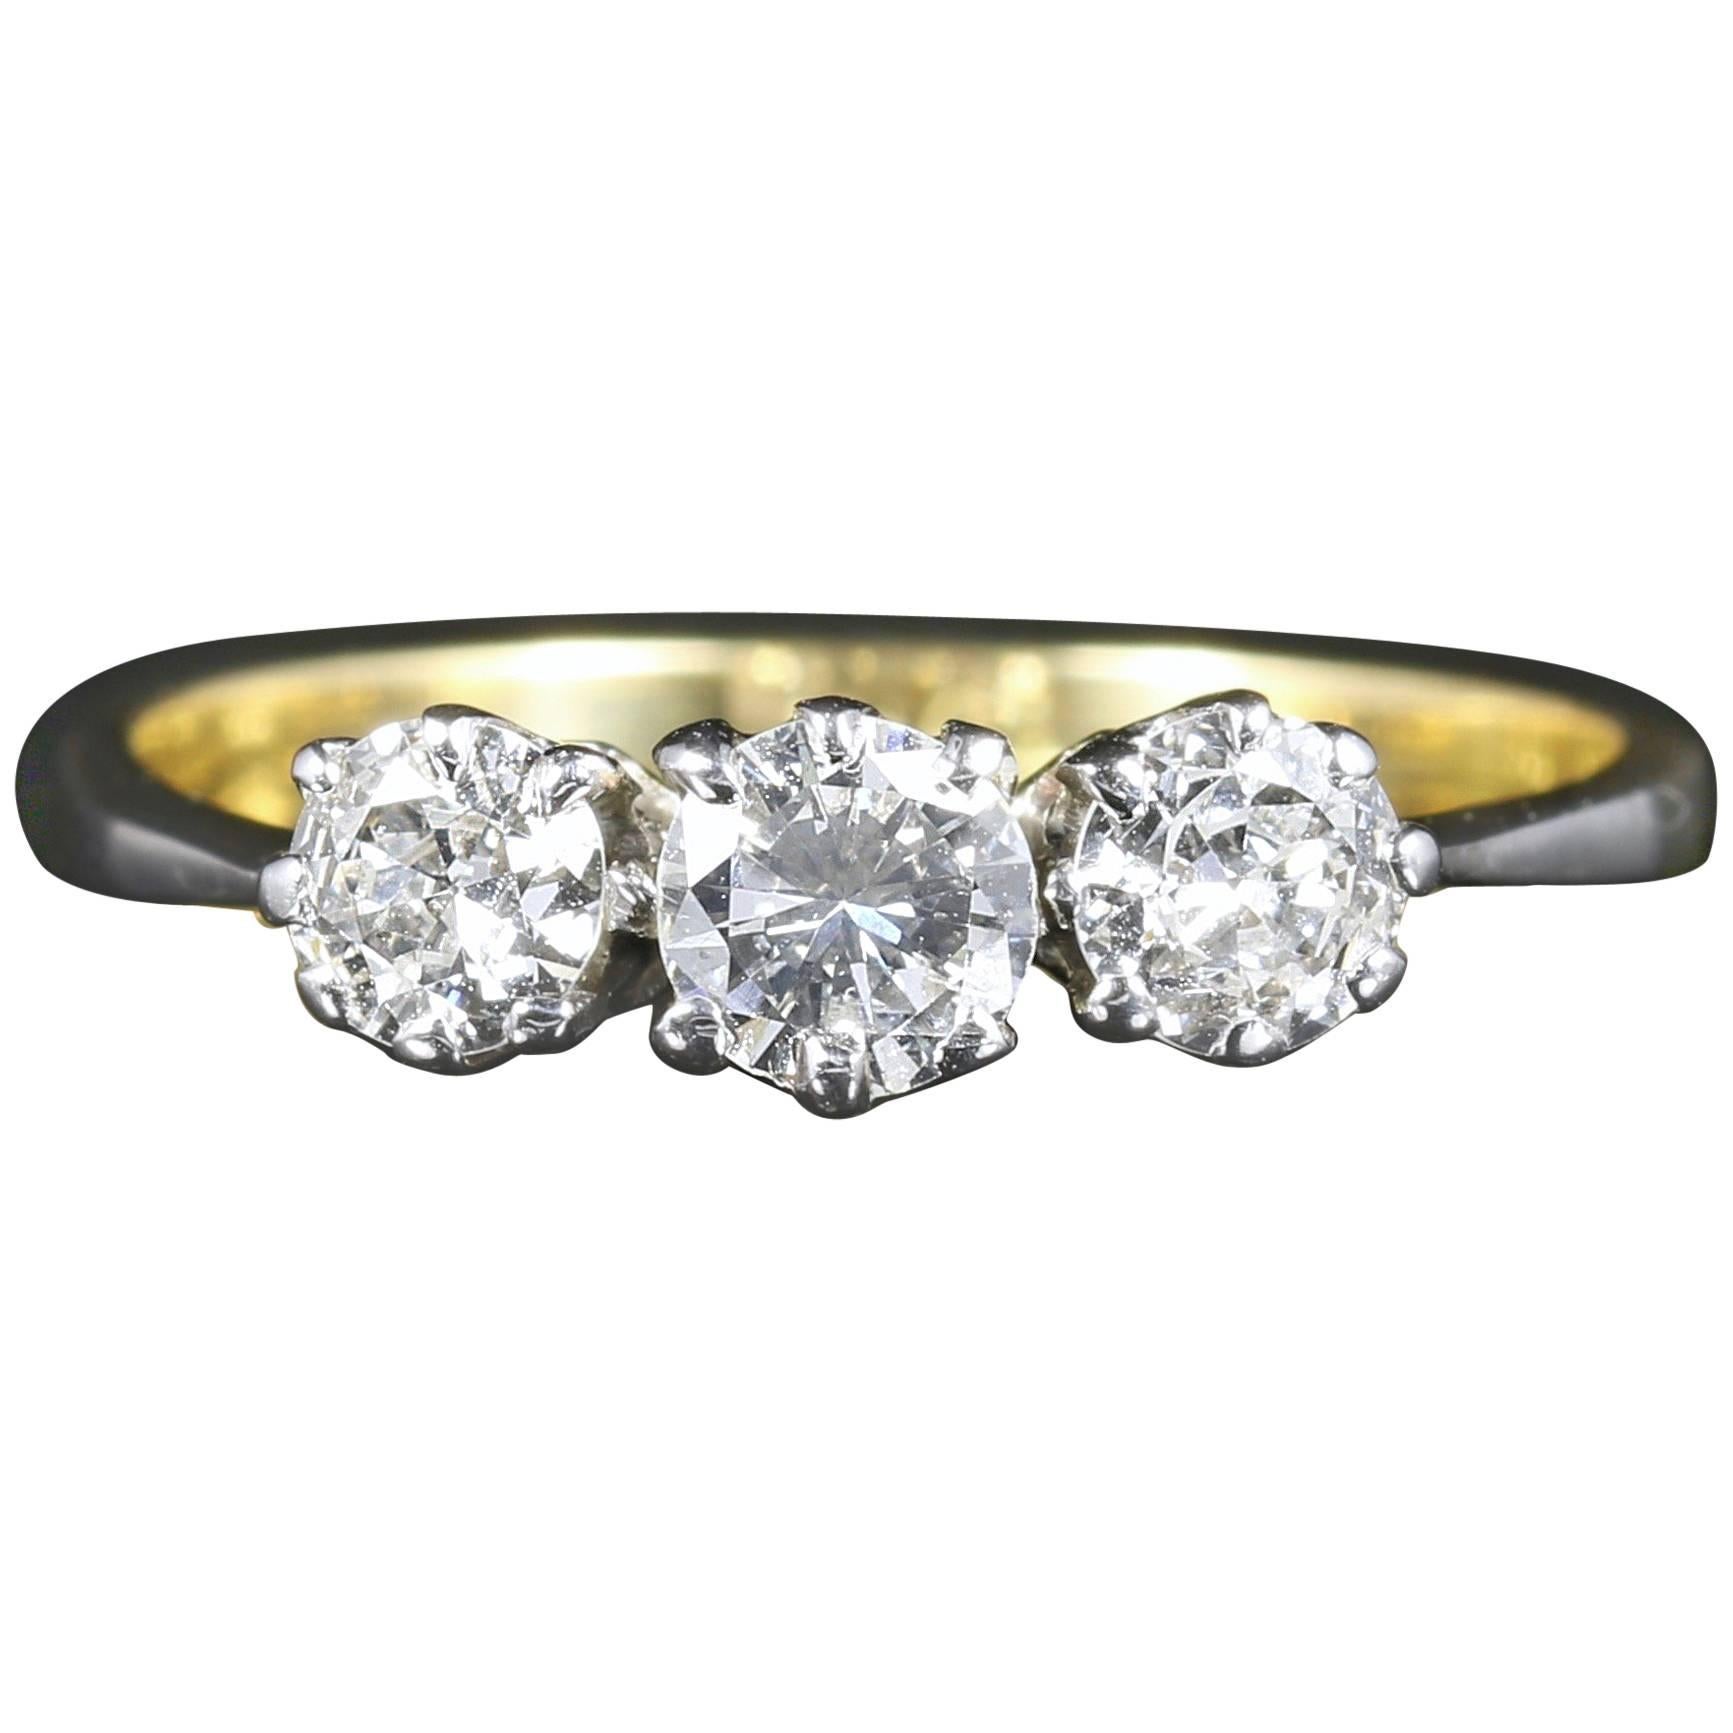 Antique Edwardian Diamond Ring Trilogy 18 Carat Plat, circa 1915